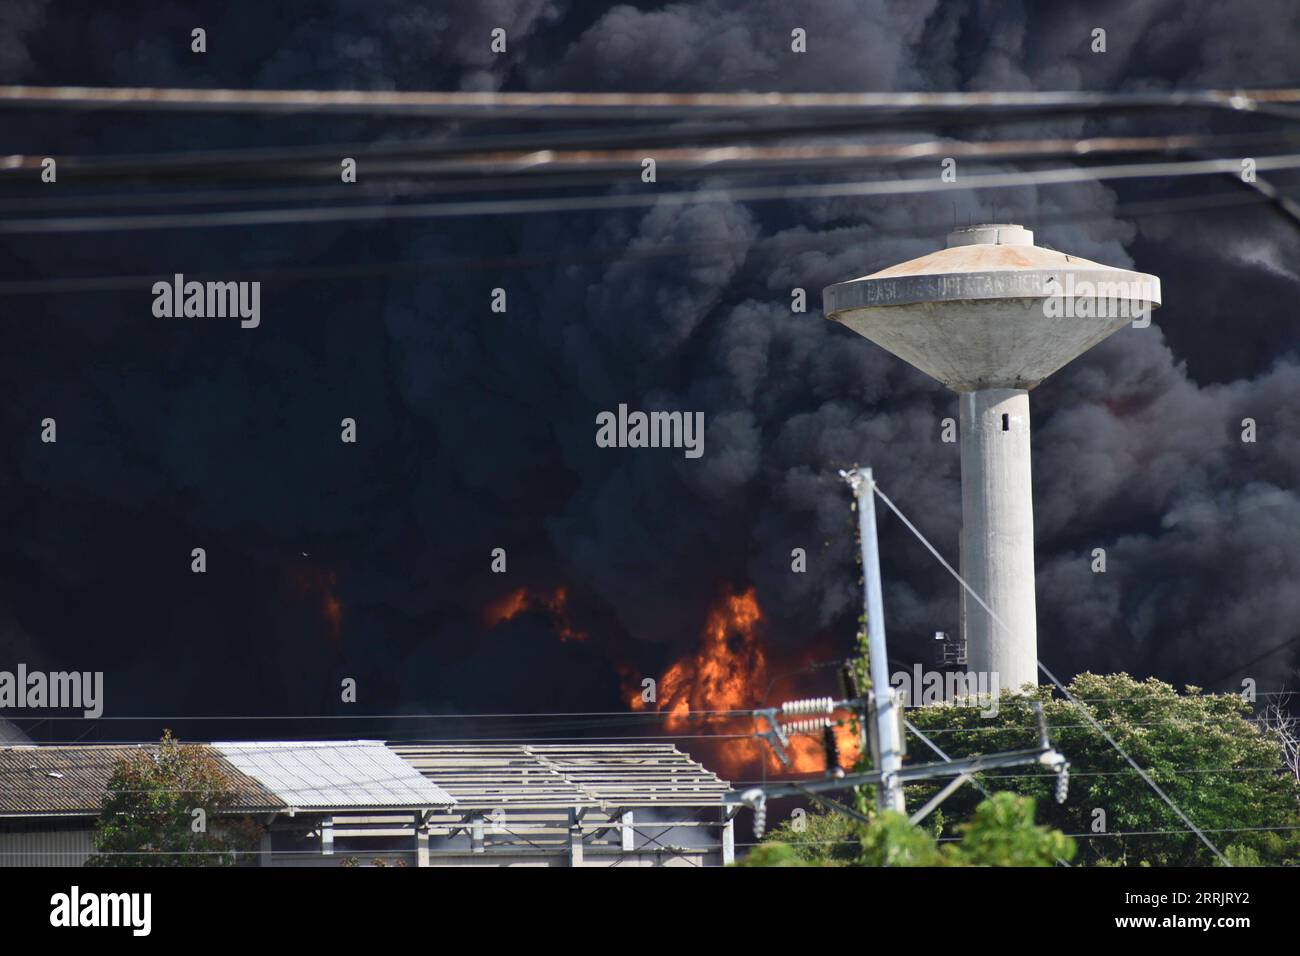 Nachrichten Themen der Woche KW31 Kuba, Treibstofflager explodiert 220808 -- HAVANNA, 8. Aug. 2022 -- aus dem brennenden Treibstofftank in der Nähe des Hafens von Matanzas, Kuba, 7. Aug. 2022, ist dicker Rauch zu sehen. Mindestens eine Person wurde bei einem Großbrand getötet und 122 verletzt, nachdem eine Reihe von Explosionen in einem Kraftstofflager in Kuba stattgefunden hatte, sagte das Ministerium für öffentliche Gesundheit am Sonntag und fügte hinzu, dass bei dem Unfall noch 16 weitere Personen vermisst wurden. /Stringer KUBA-TANKEXPLOSION-UNFALL Xinhua PUBLICATIONxNOTxINxCHN Stockfoto